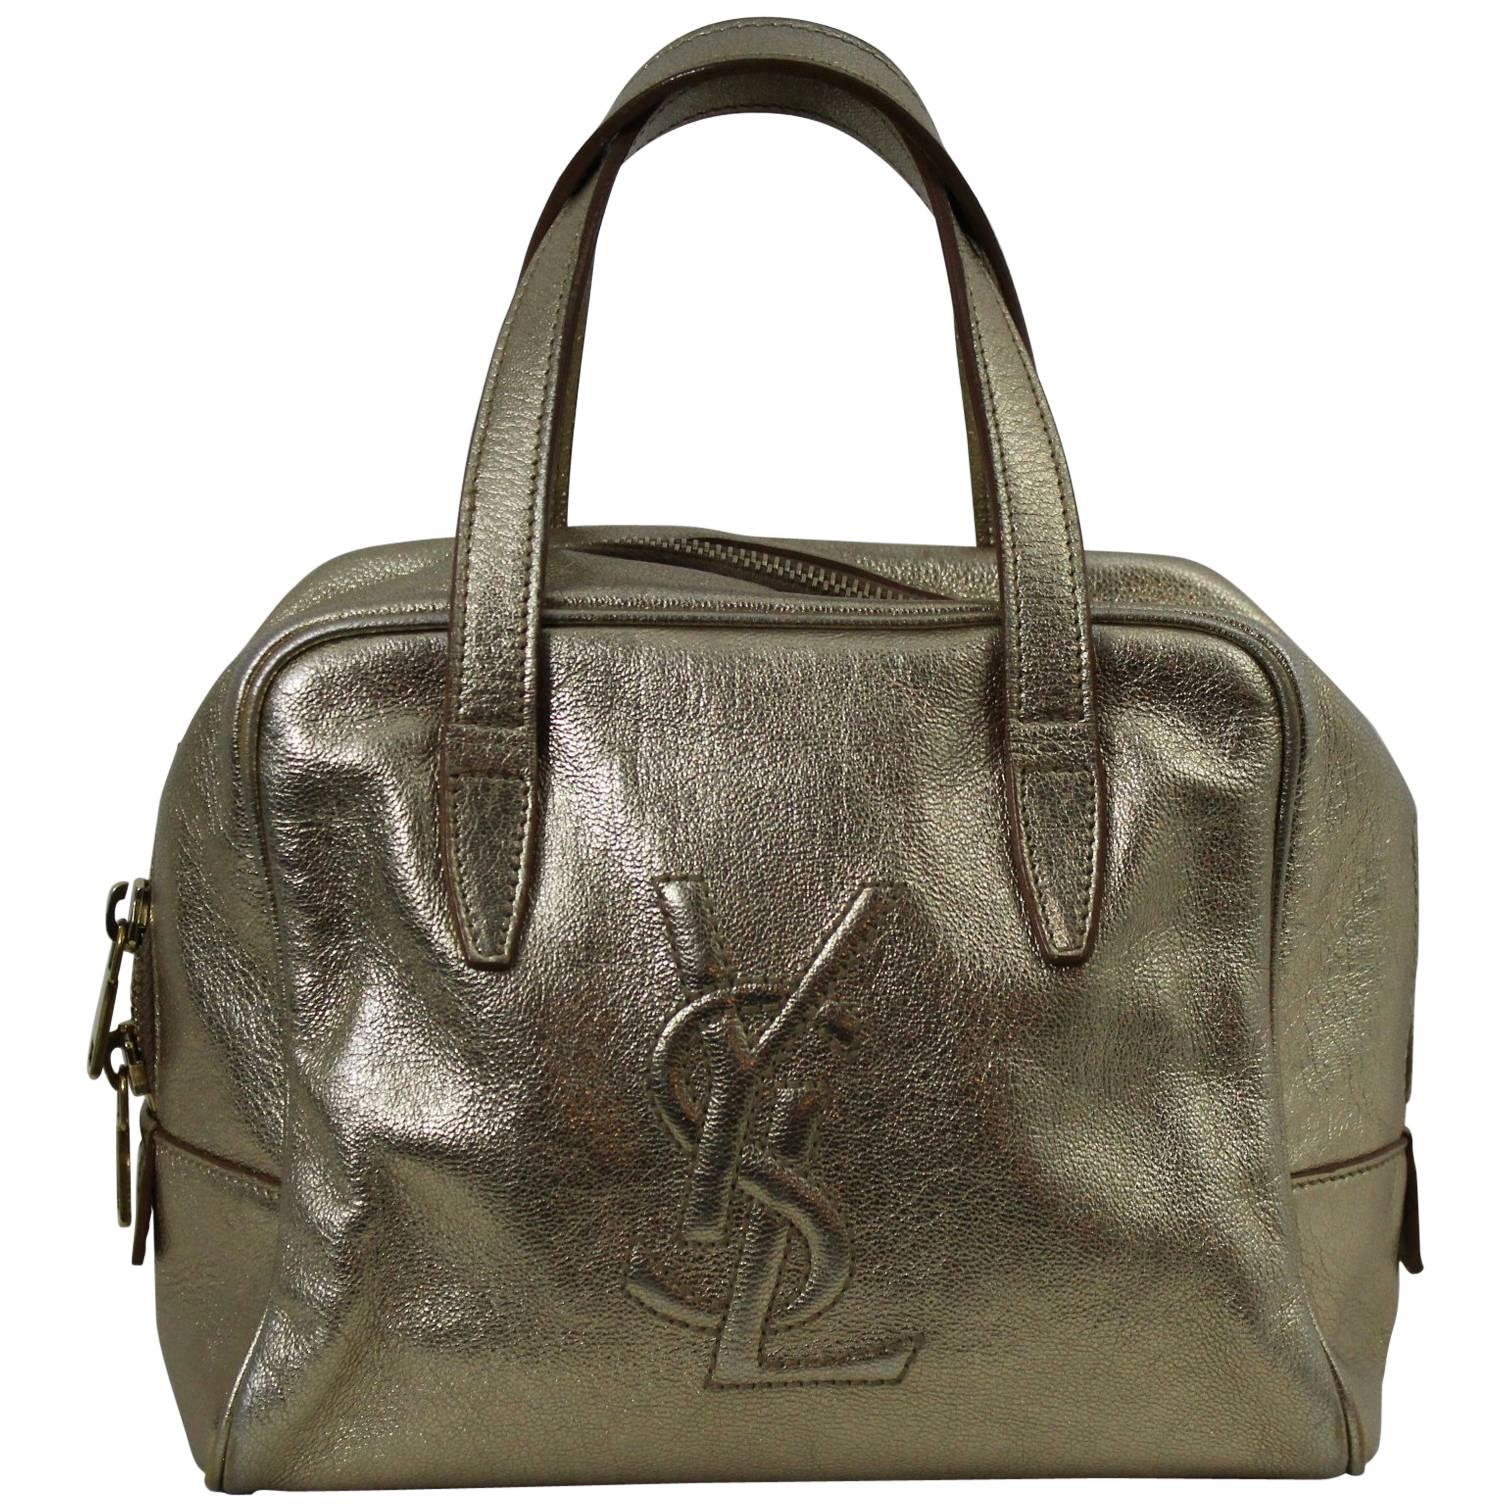 Lovely Golden Leather Yves Saint Laurent handbag